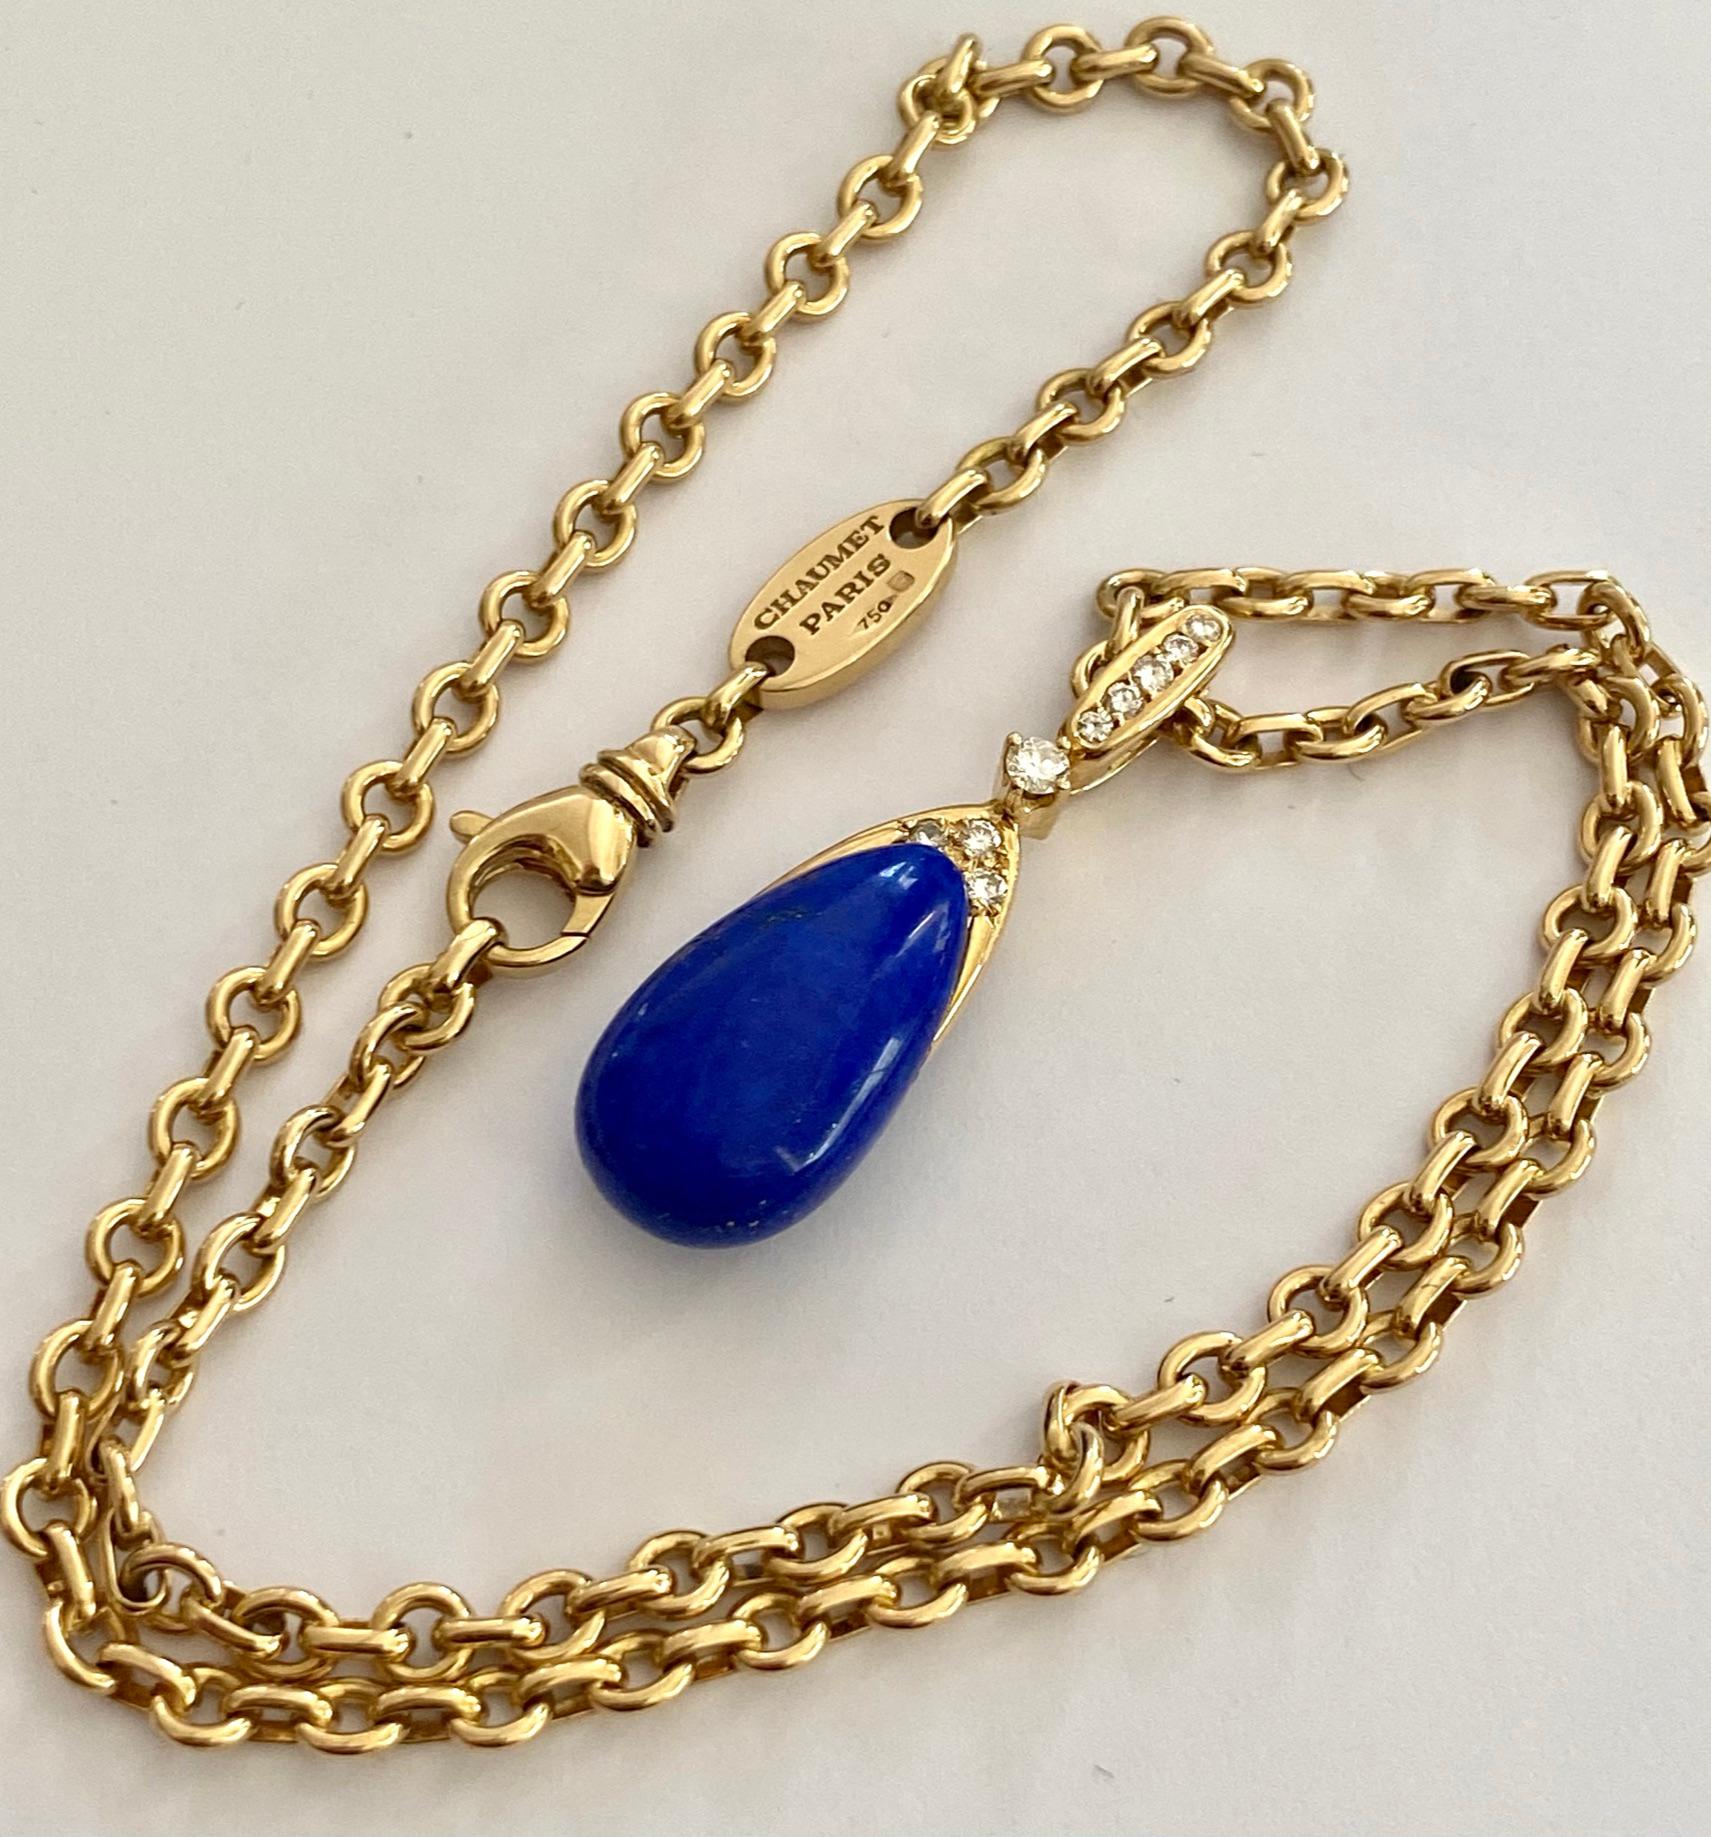 Brilliant Cut Chaumet Paris, Necklace with Pendant, Lapis Lazuli and 9 Diamonds